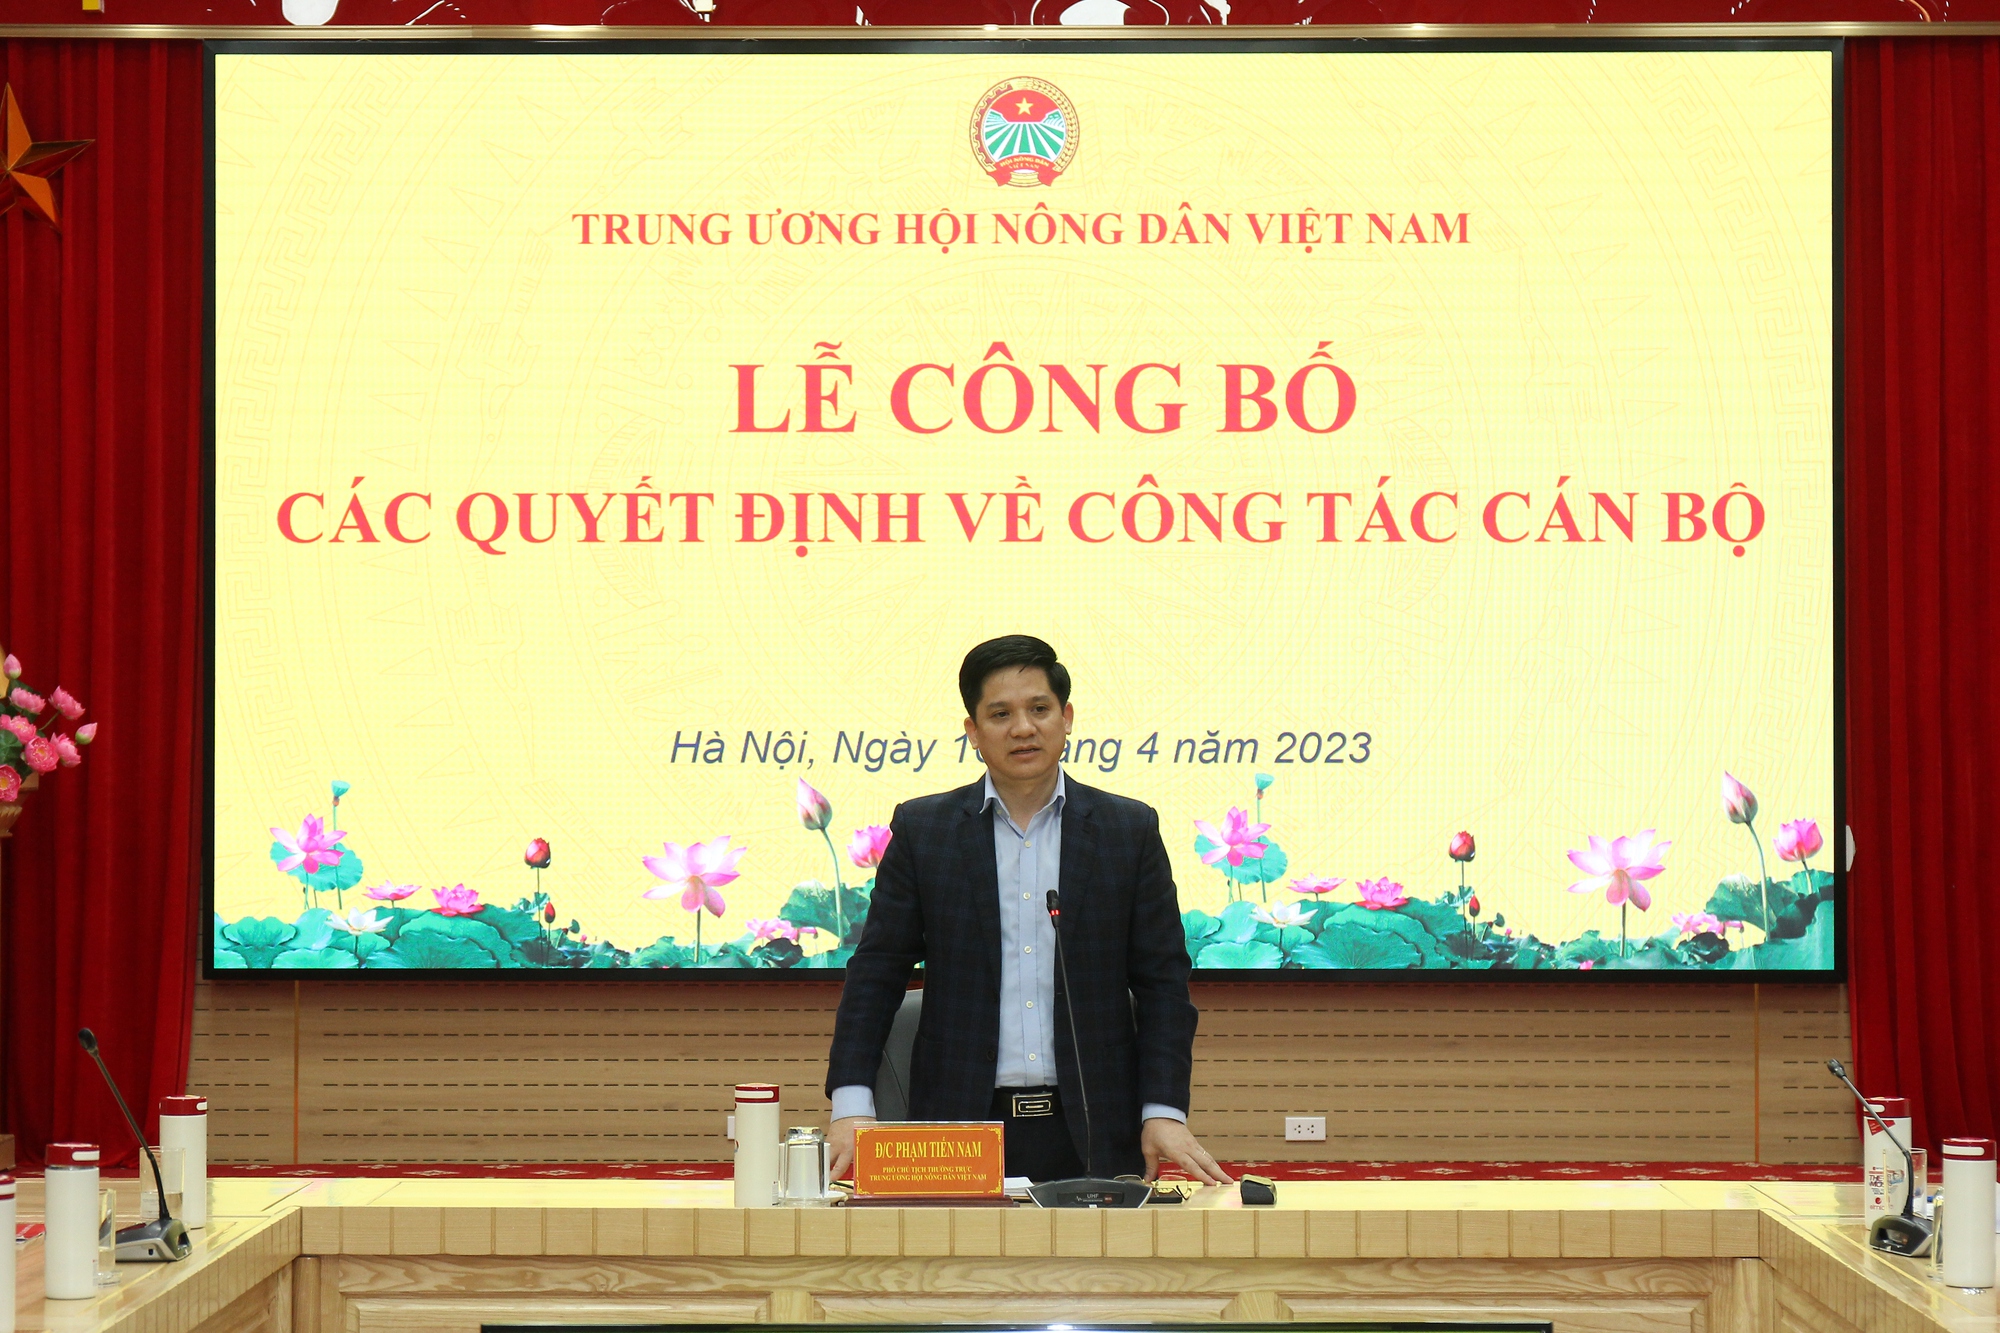 Tiếp nhận và bổ nhiệm ông Trần Sĩ Nghị làm Thư ký Chủ tịch BCH Trung ương Hội Nông dân Việt Nam  - Ảnh 5.